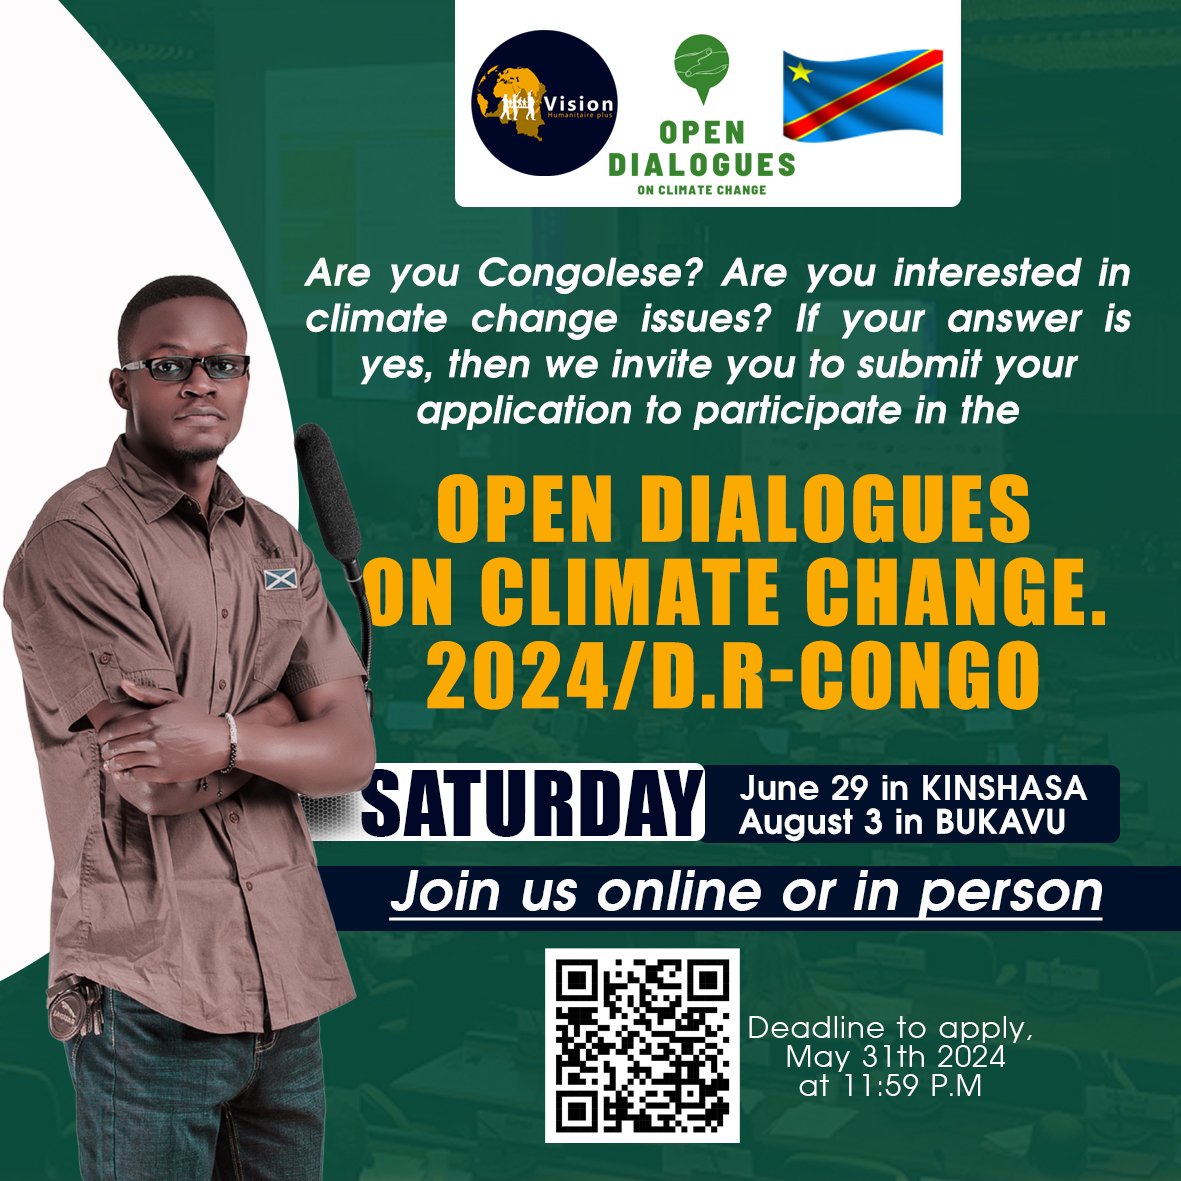 󱢏
APPEL À CANDIDATURE #ODCC2024 
 Le lien pour postuler est ici : docs.google.com/forms/d/e/1FAI…
#ClimateActionNow #ClimateStrike #ClimateCrisis
@KetsiaPassou @LouvainCoo @COP29_AZ @_AfricanUnion @vanessa_vash @Evebazaiba #rdcongo